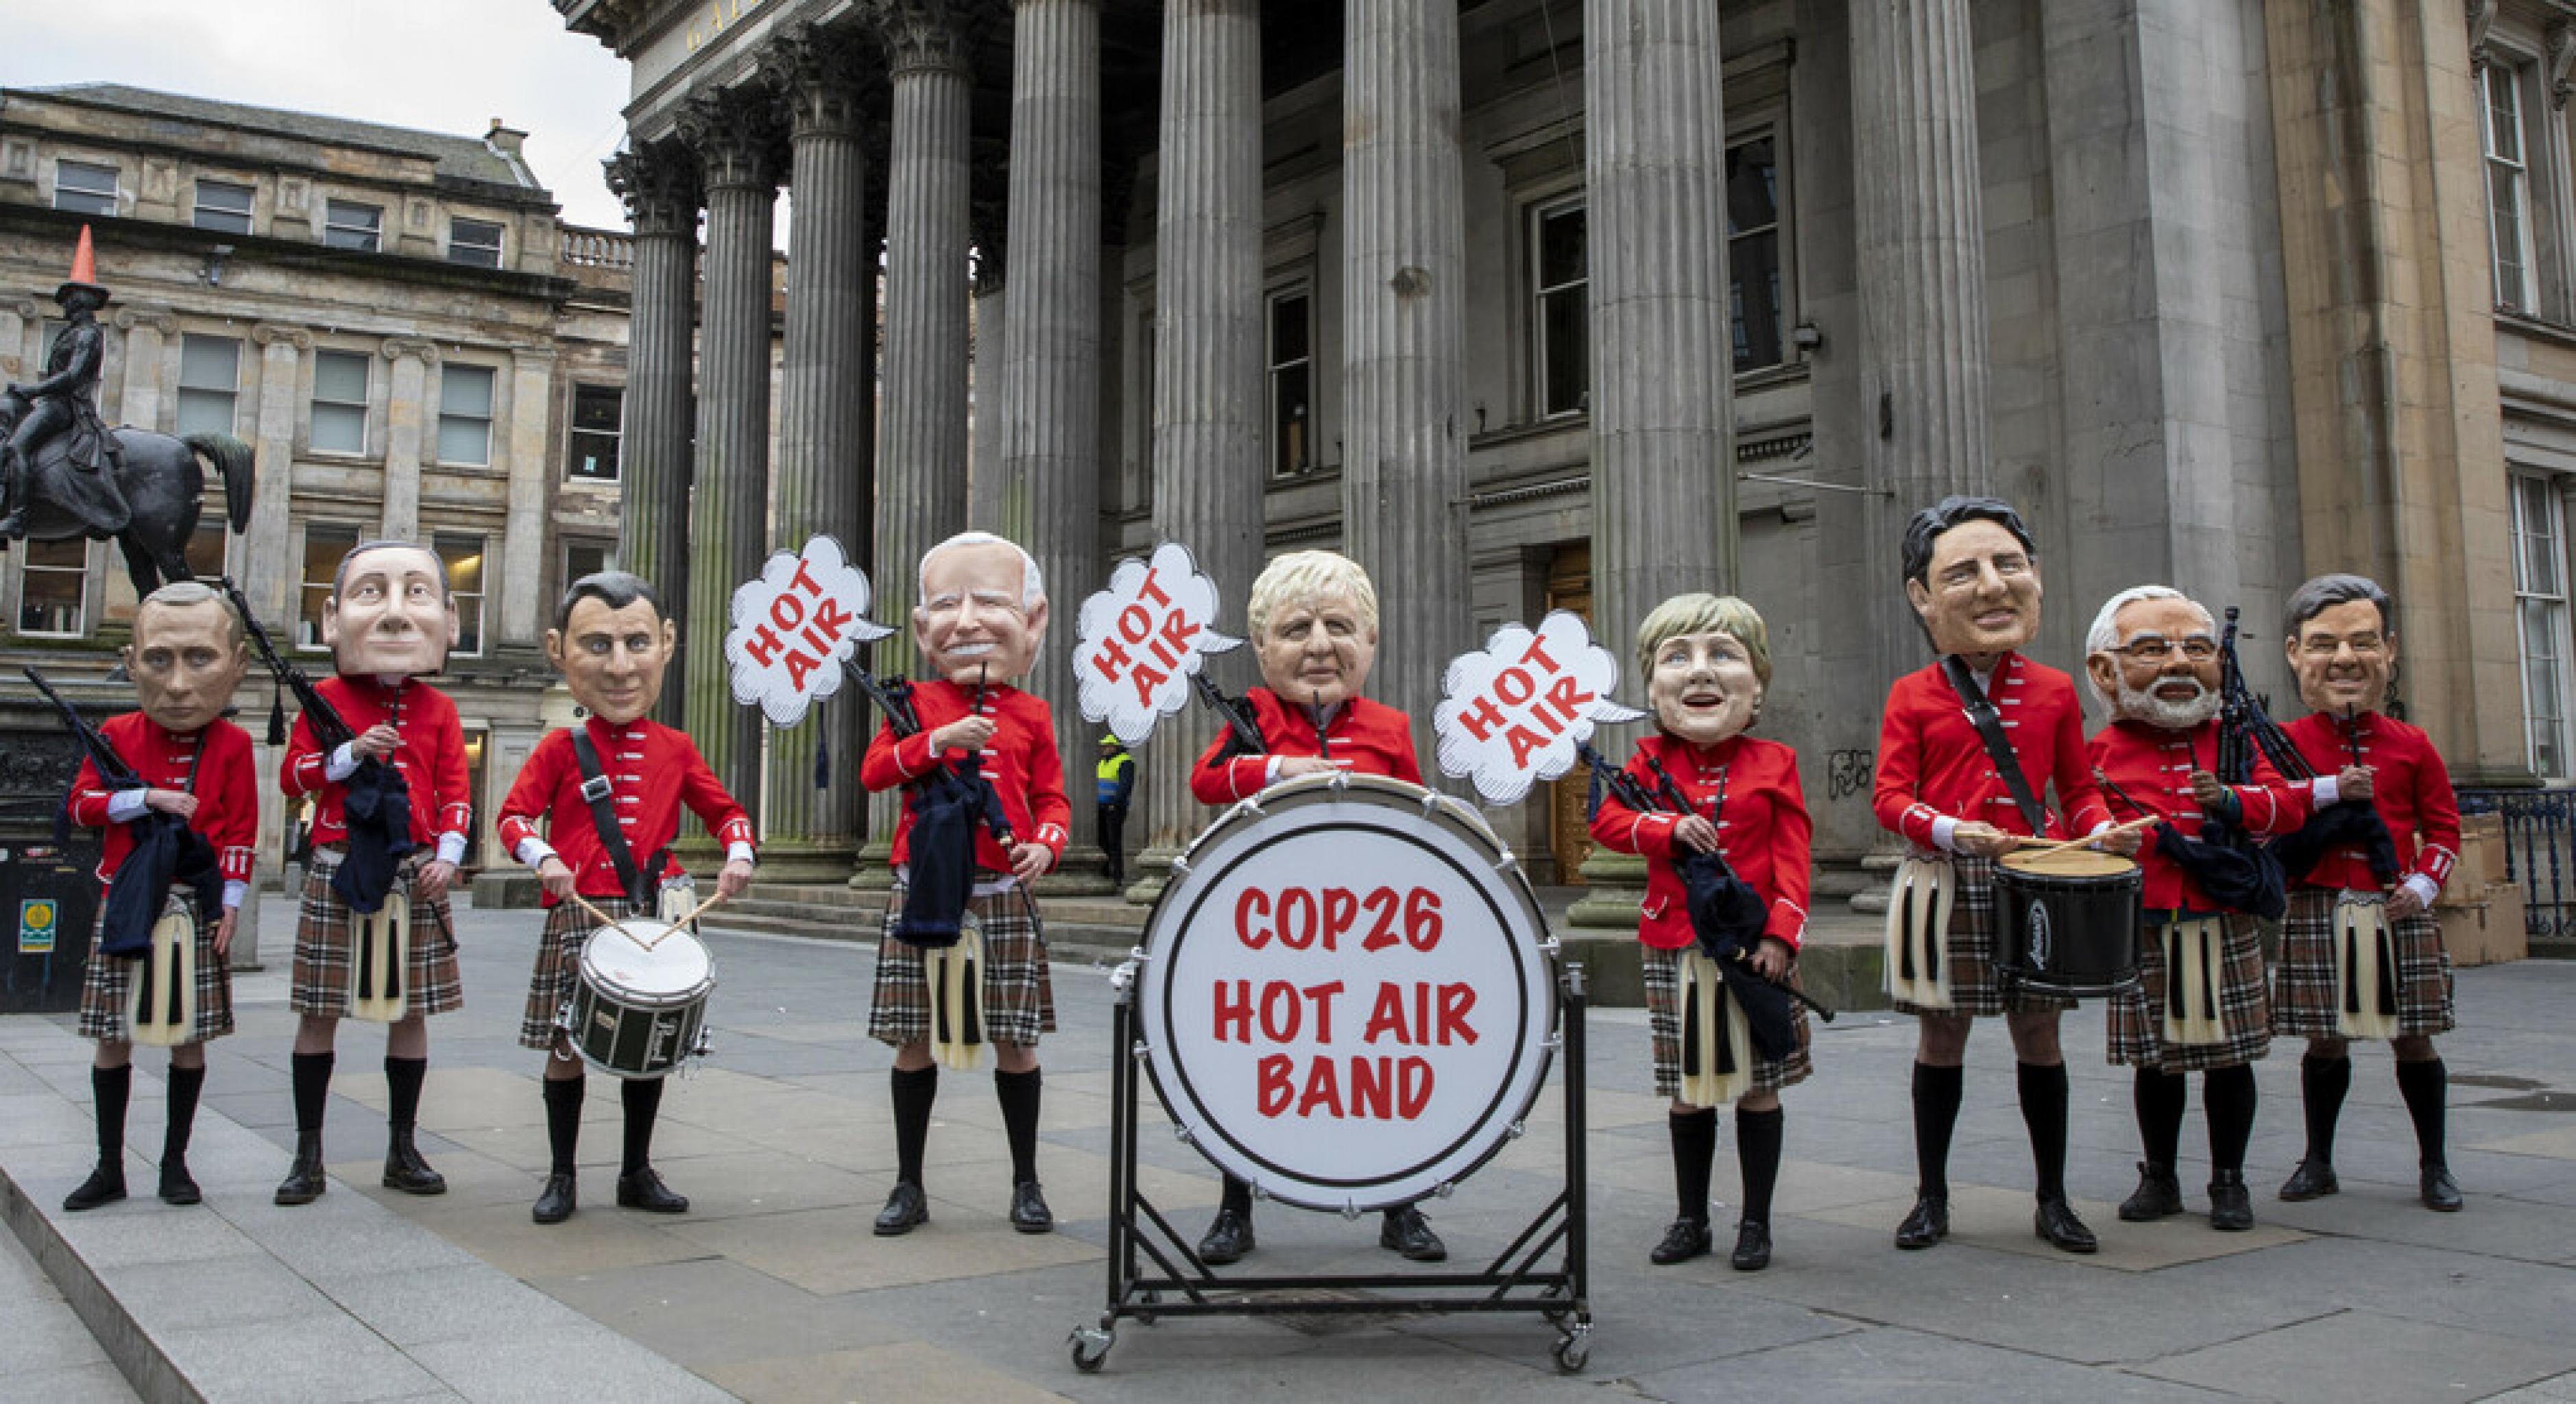 Figuren verschiedener Staatschef*innen posieren als „Hot Air Band“ („Heiße-Luft-Kapelle“). Sie tragen schottische Trachten und halten Dudelsäcke und Trommeln.